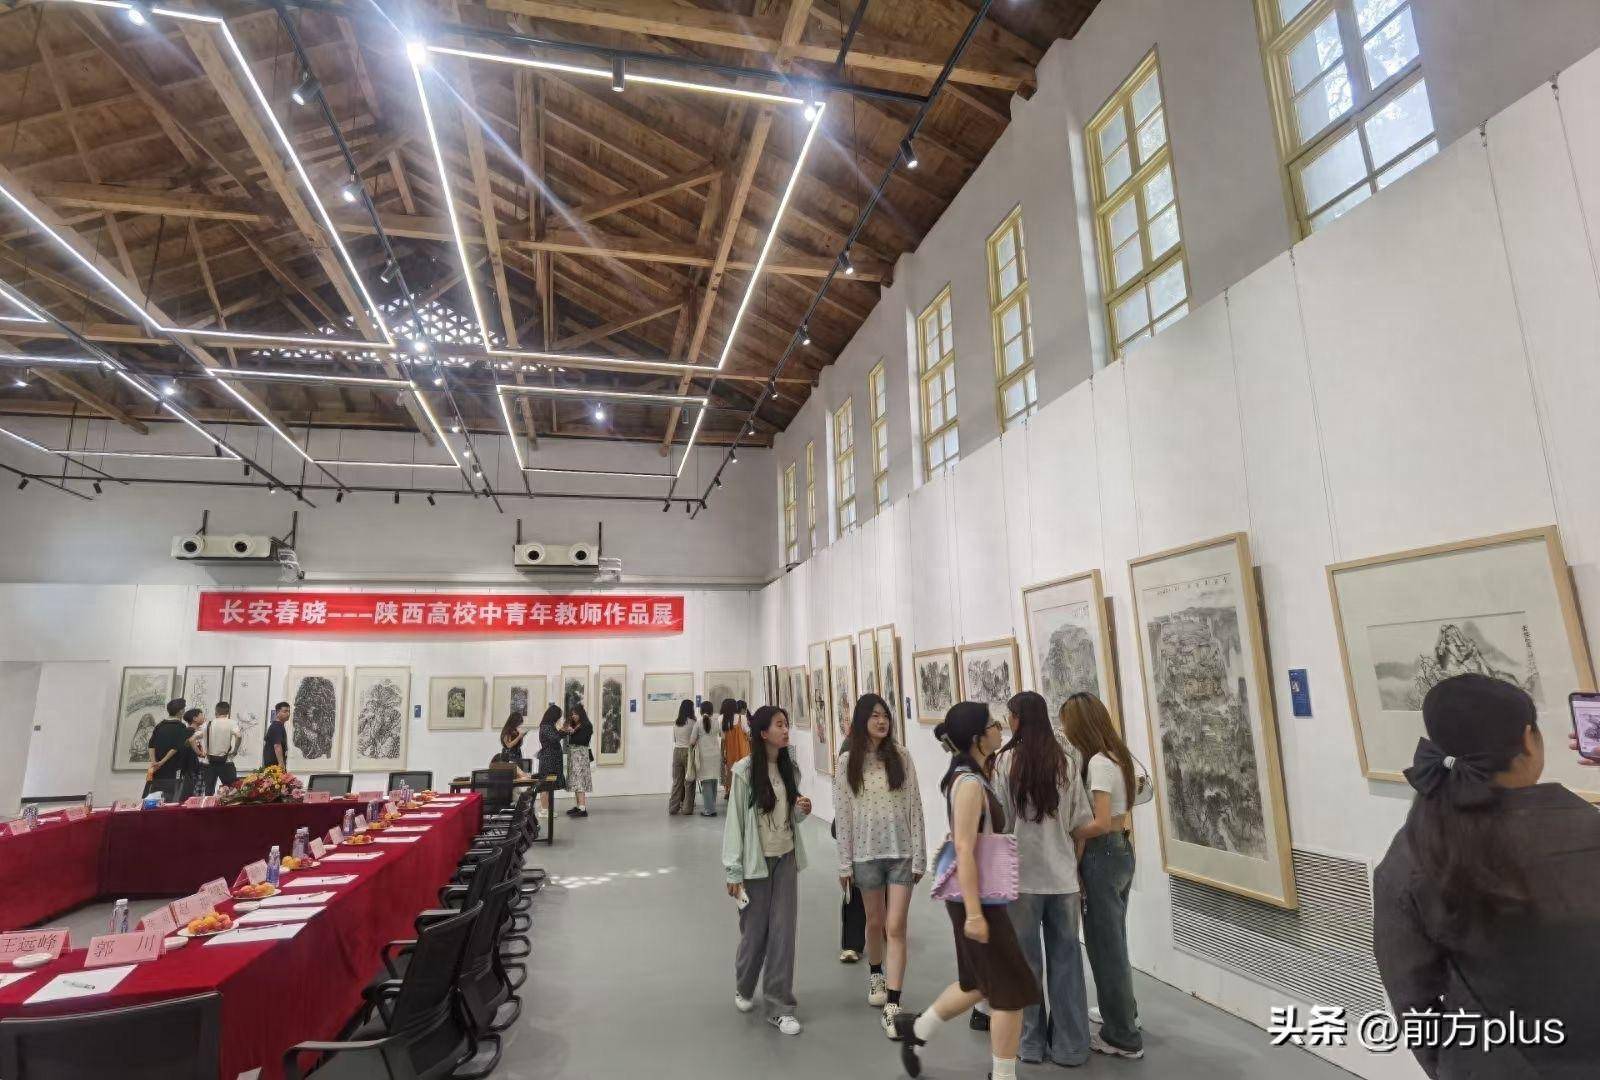 此次展览邀请了来自以陕西省为主的16所艺术类高等院校的32位中青年